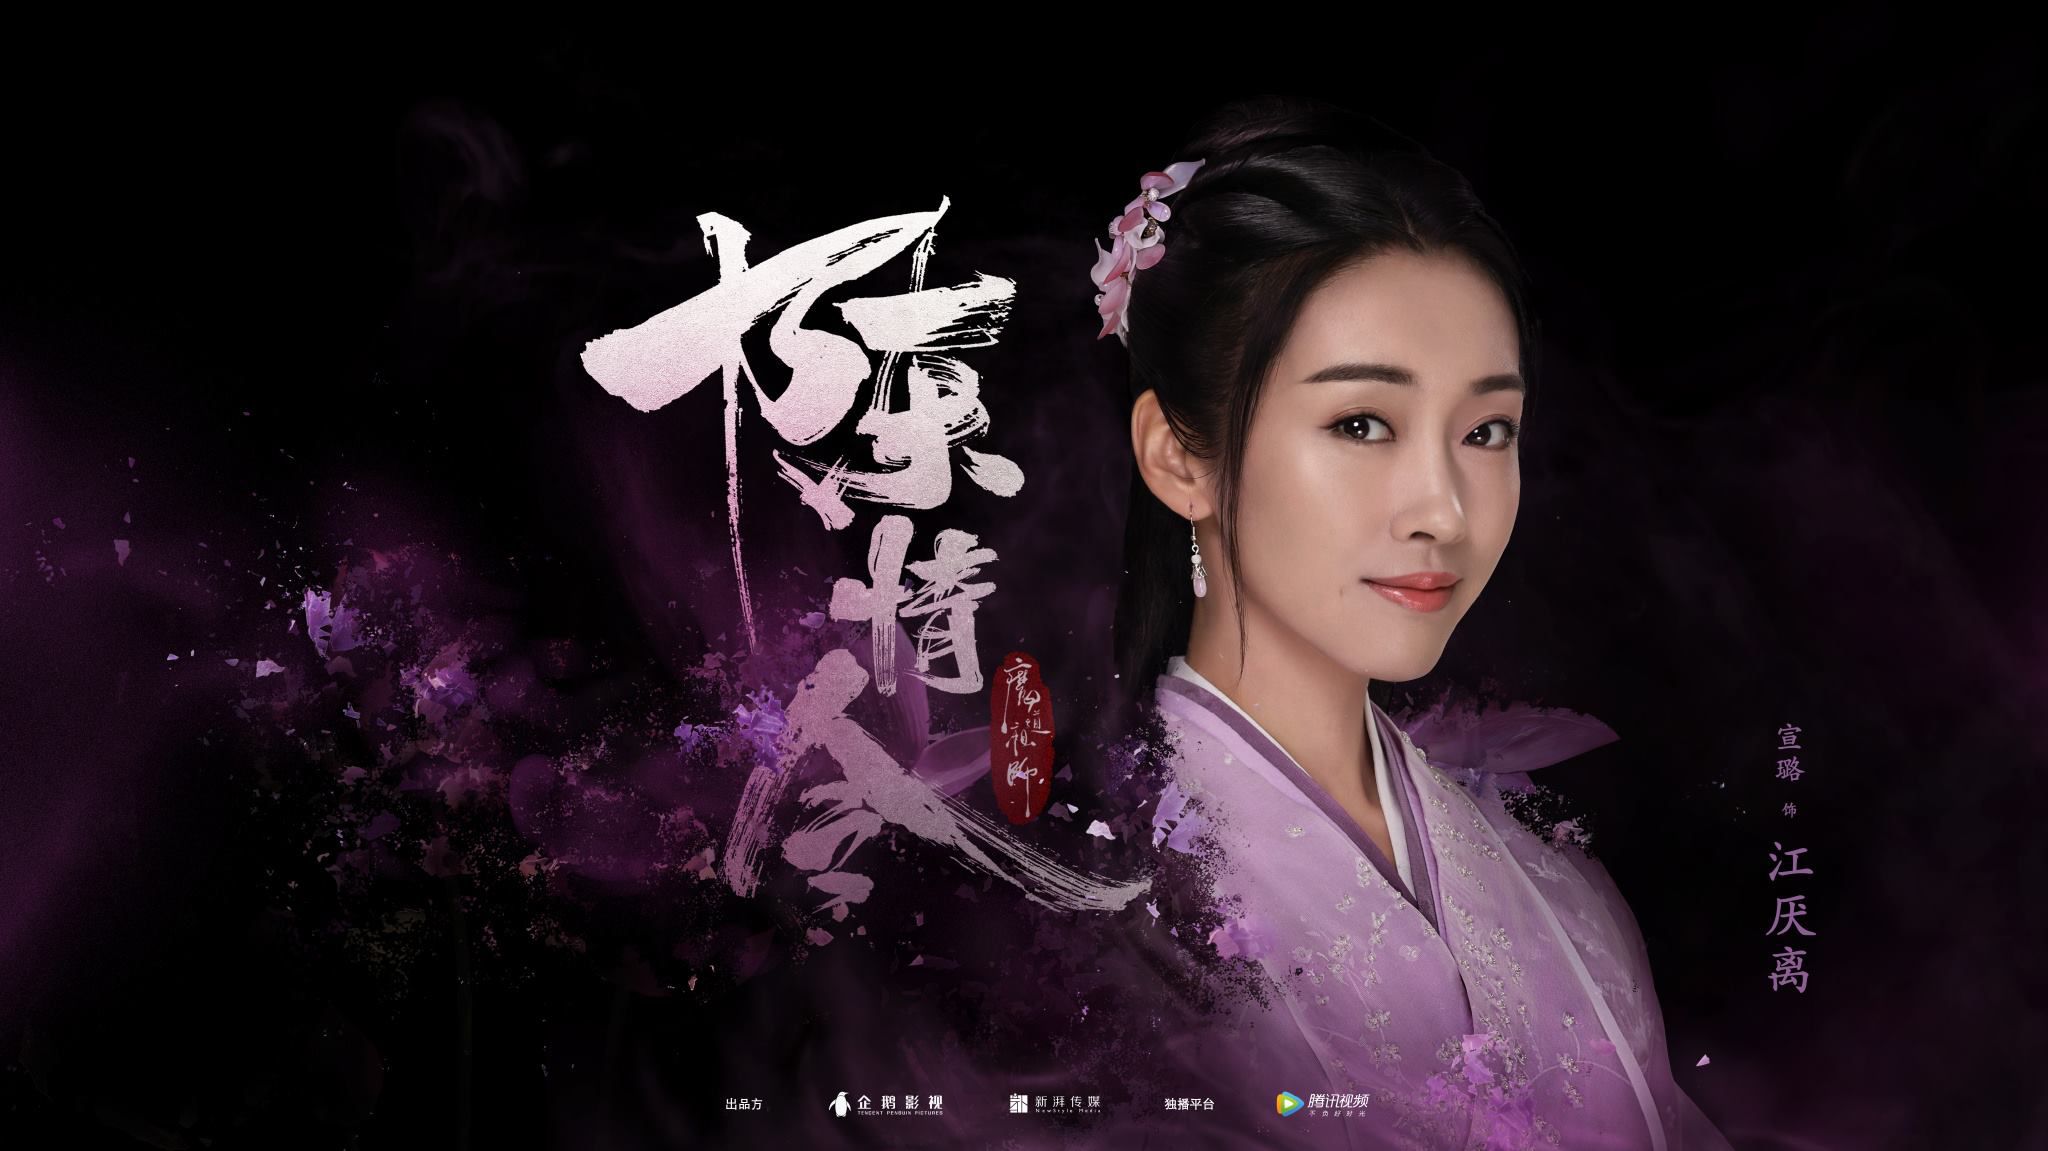 Trần tình lệnh: Phim đam mỹ Trung Quốc tung loạt hình trailer tuyệt đẹp (6)